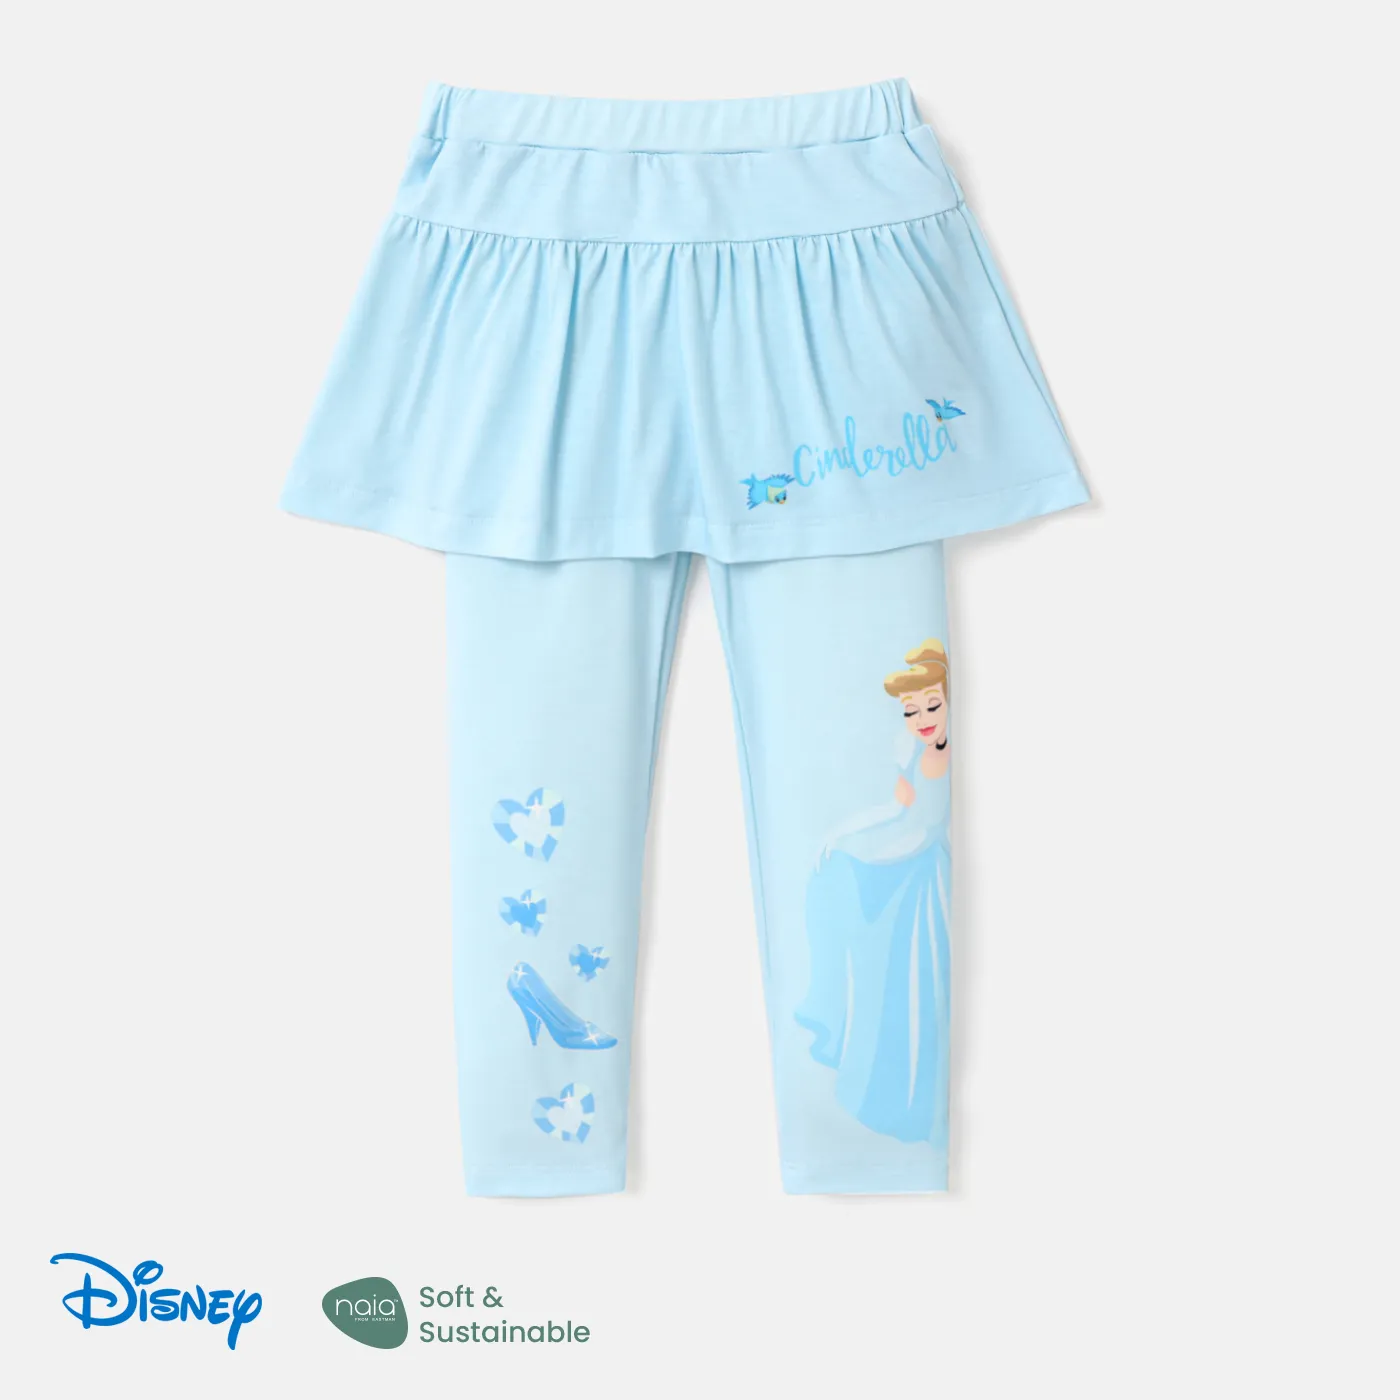 Disney Princess Toddler Girl Naiaâ¢ Character Print Ruffle Overlay 2 In 1 Leggings